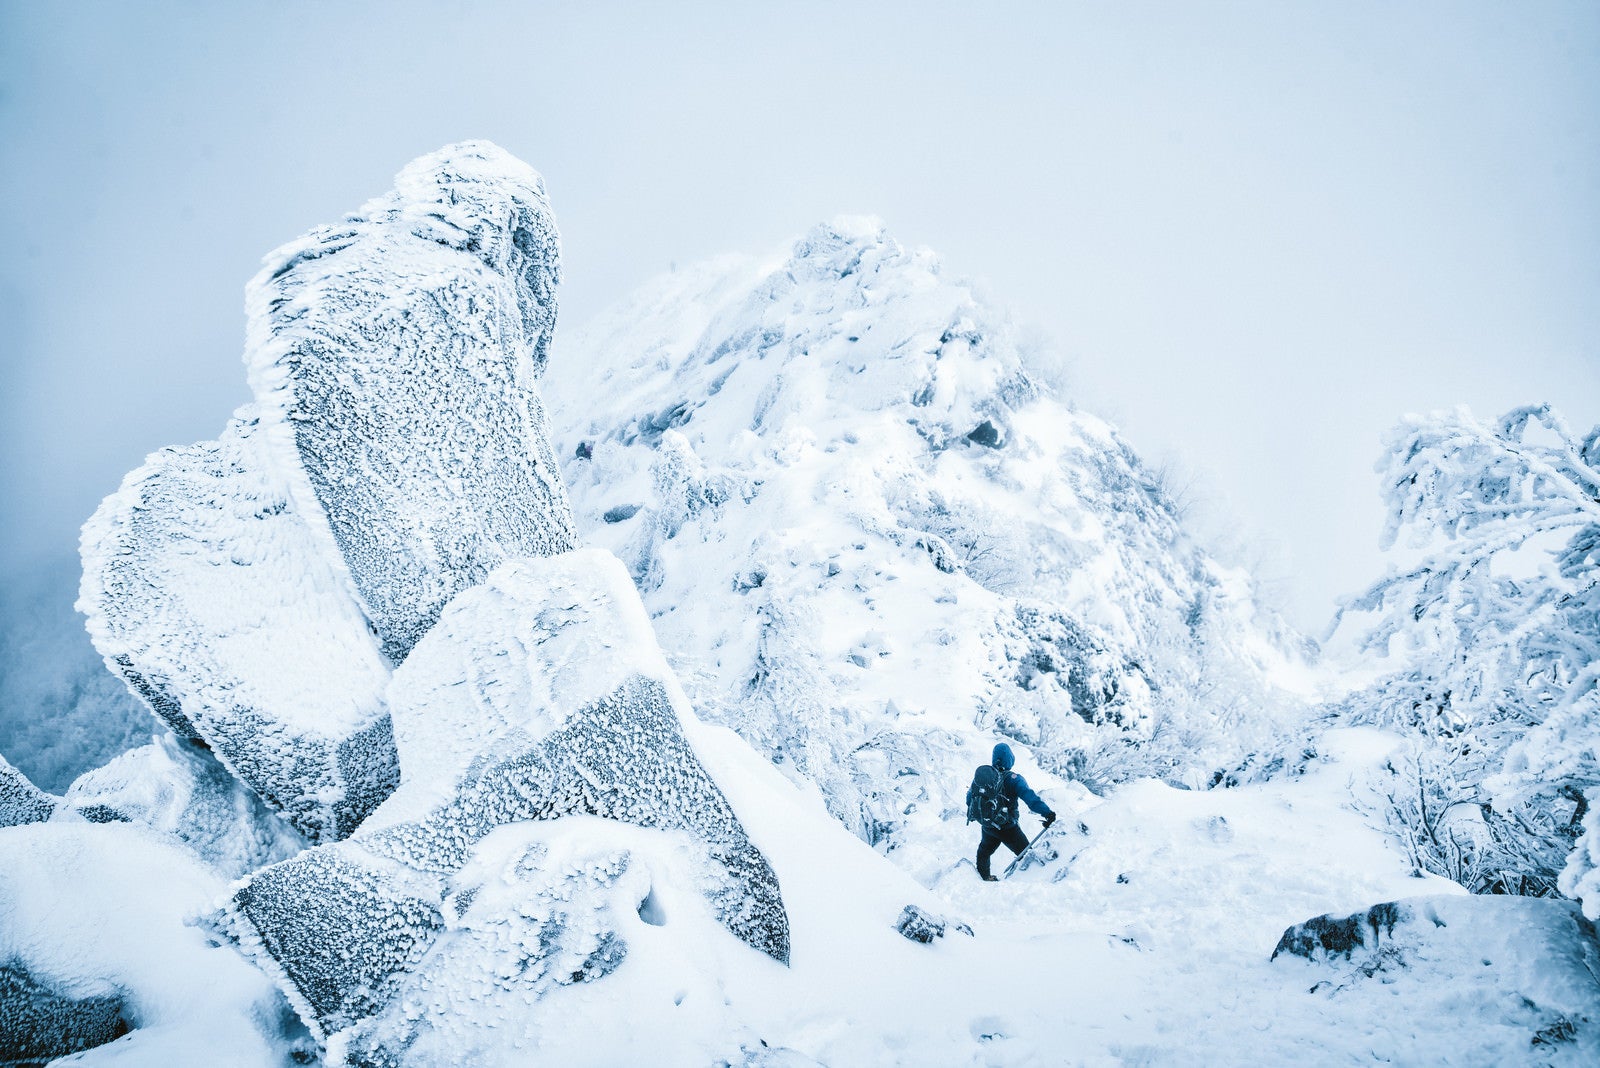 「吹雪く天狗岳の稜線と登山者」の写真